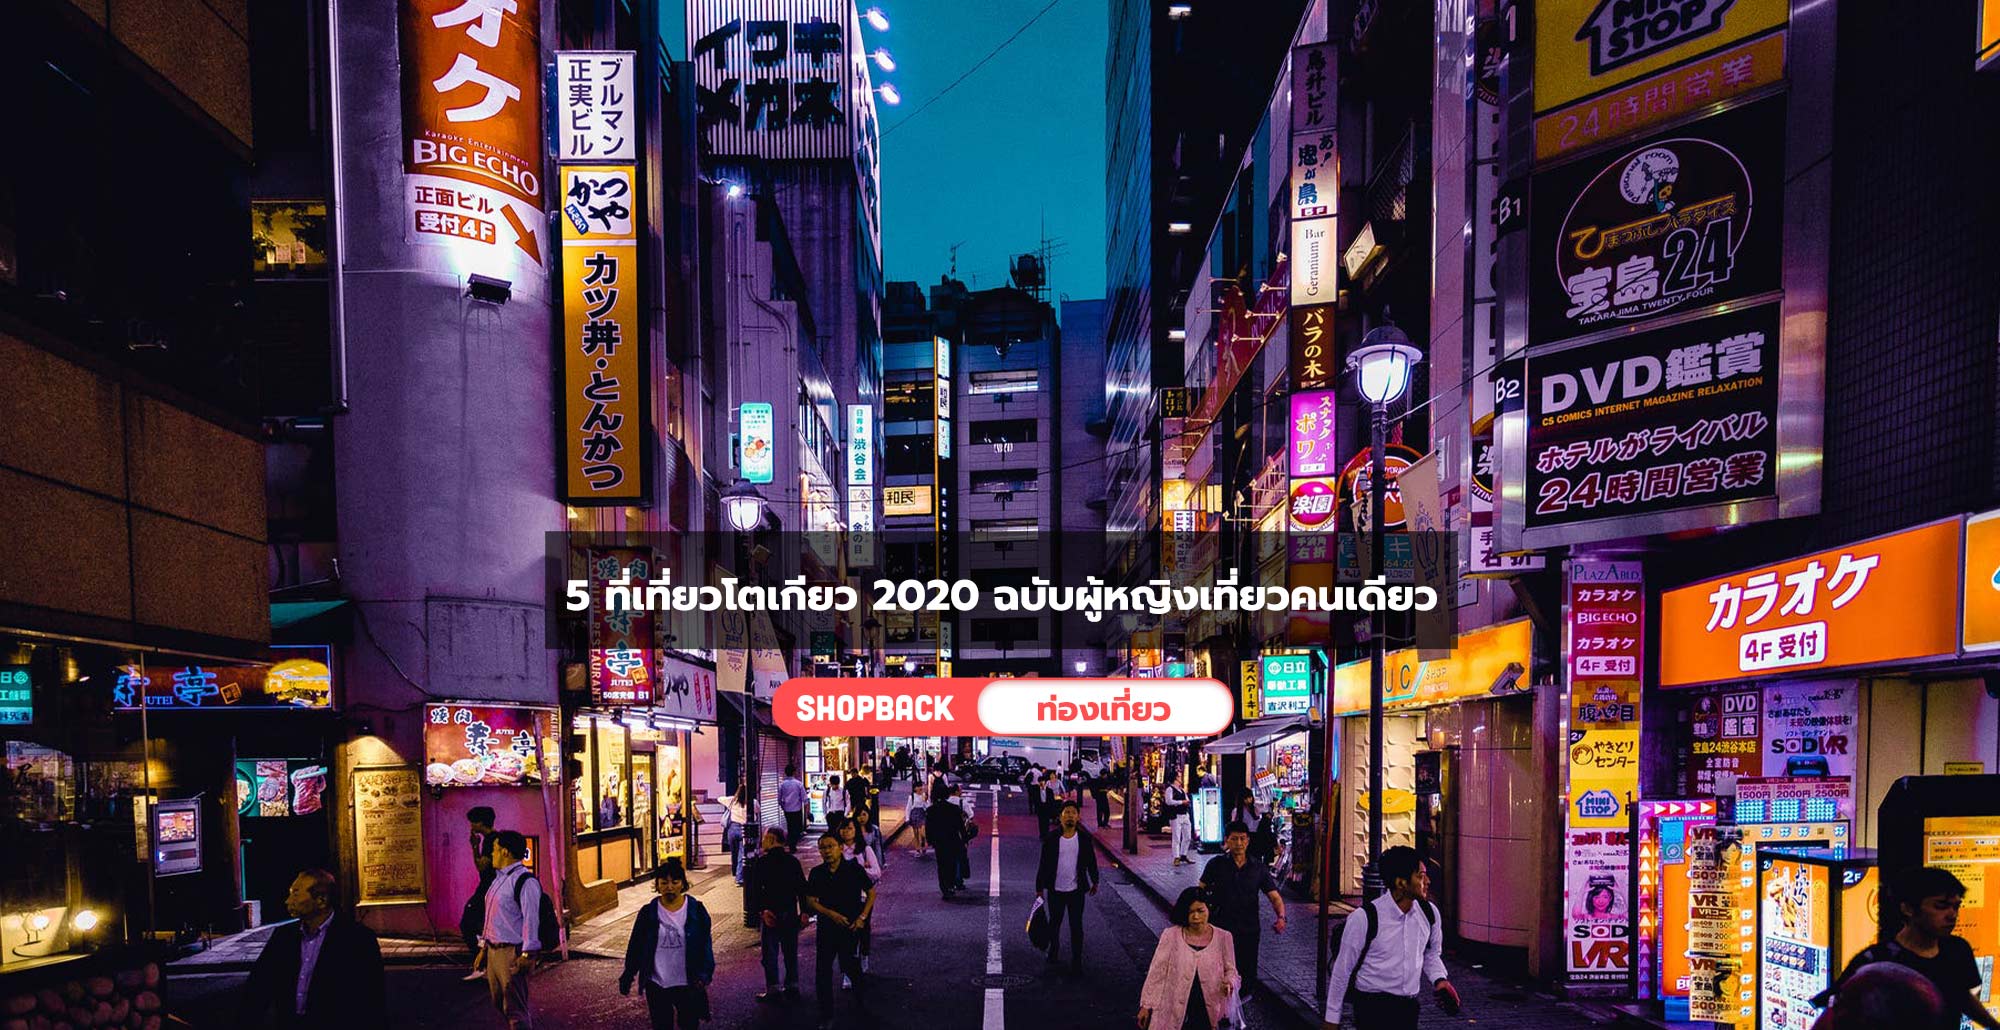 5 ที่เที่ยวโตเกียวคนเดียว 2020 ฉบับผู้หญิงเที่ยวคนเดียวสนุกและปลอดภัย!